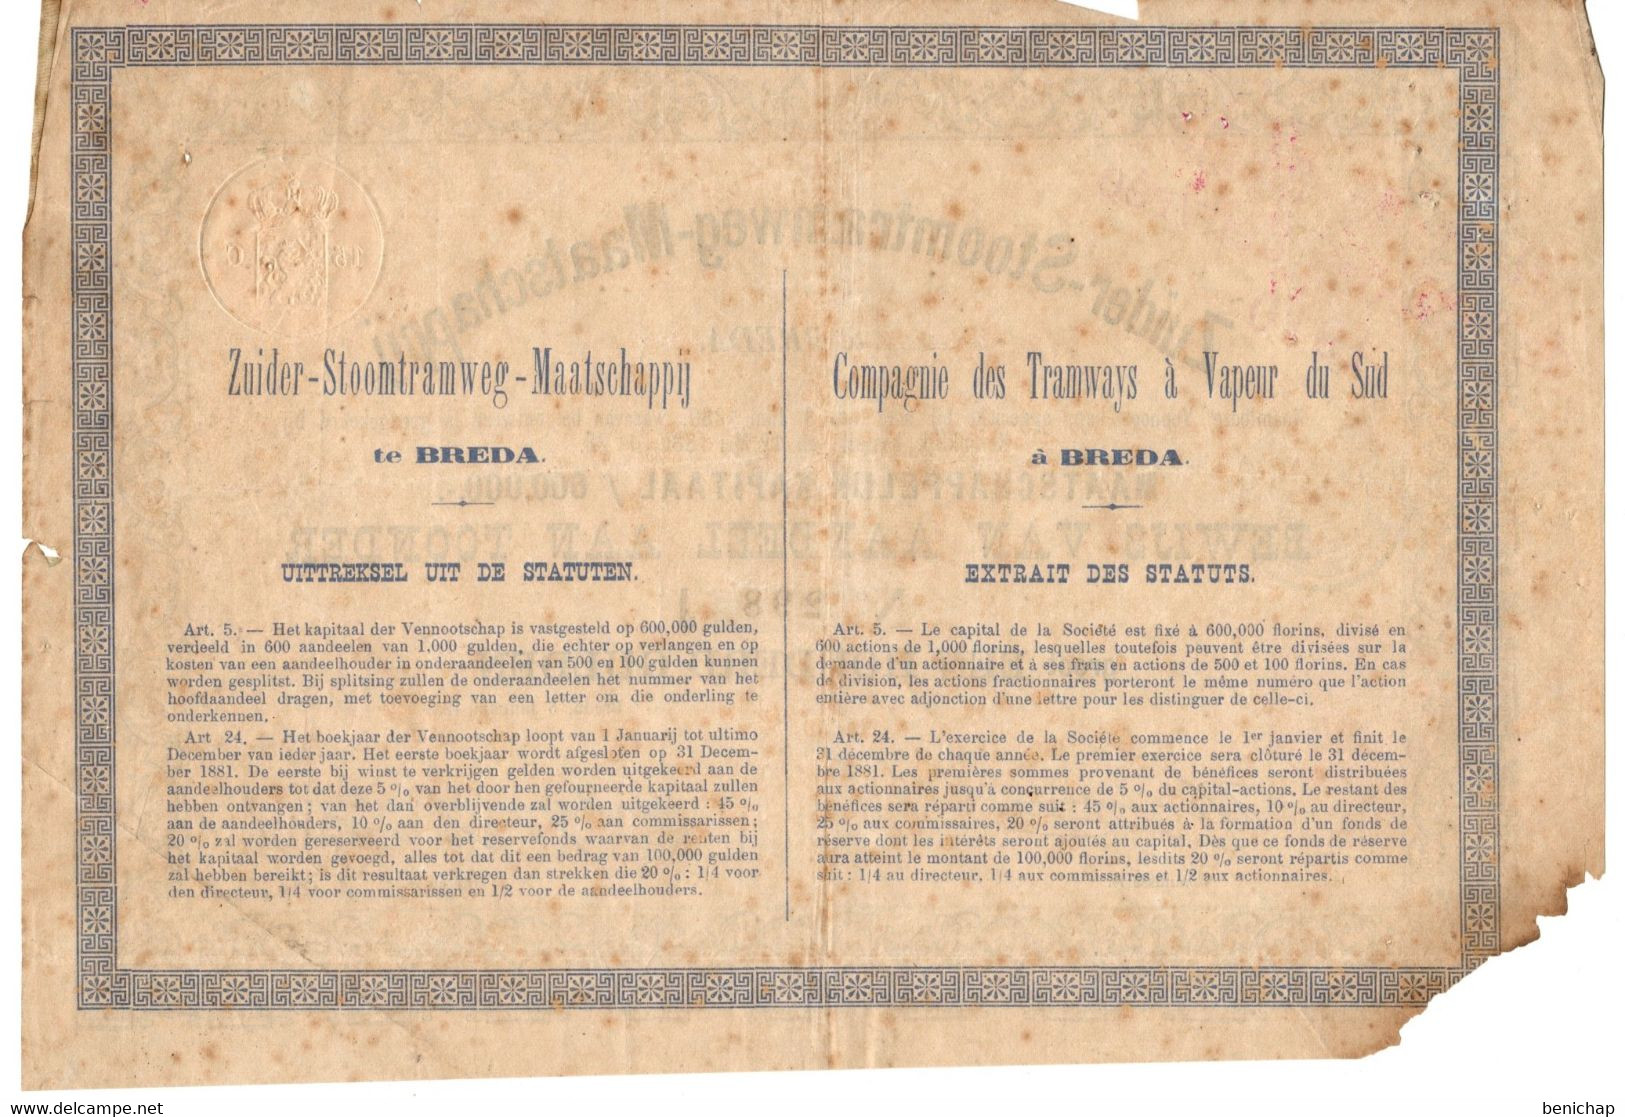 Zuider-Stoomtramweg-Maatschappij Te Breda - Bewijs Van Aandeel Aan Toonder Groot Een Honderd Gulden - 5 Januarij 1881 - Bank & Versicherung